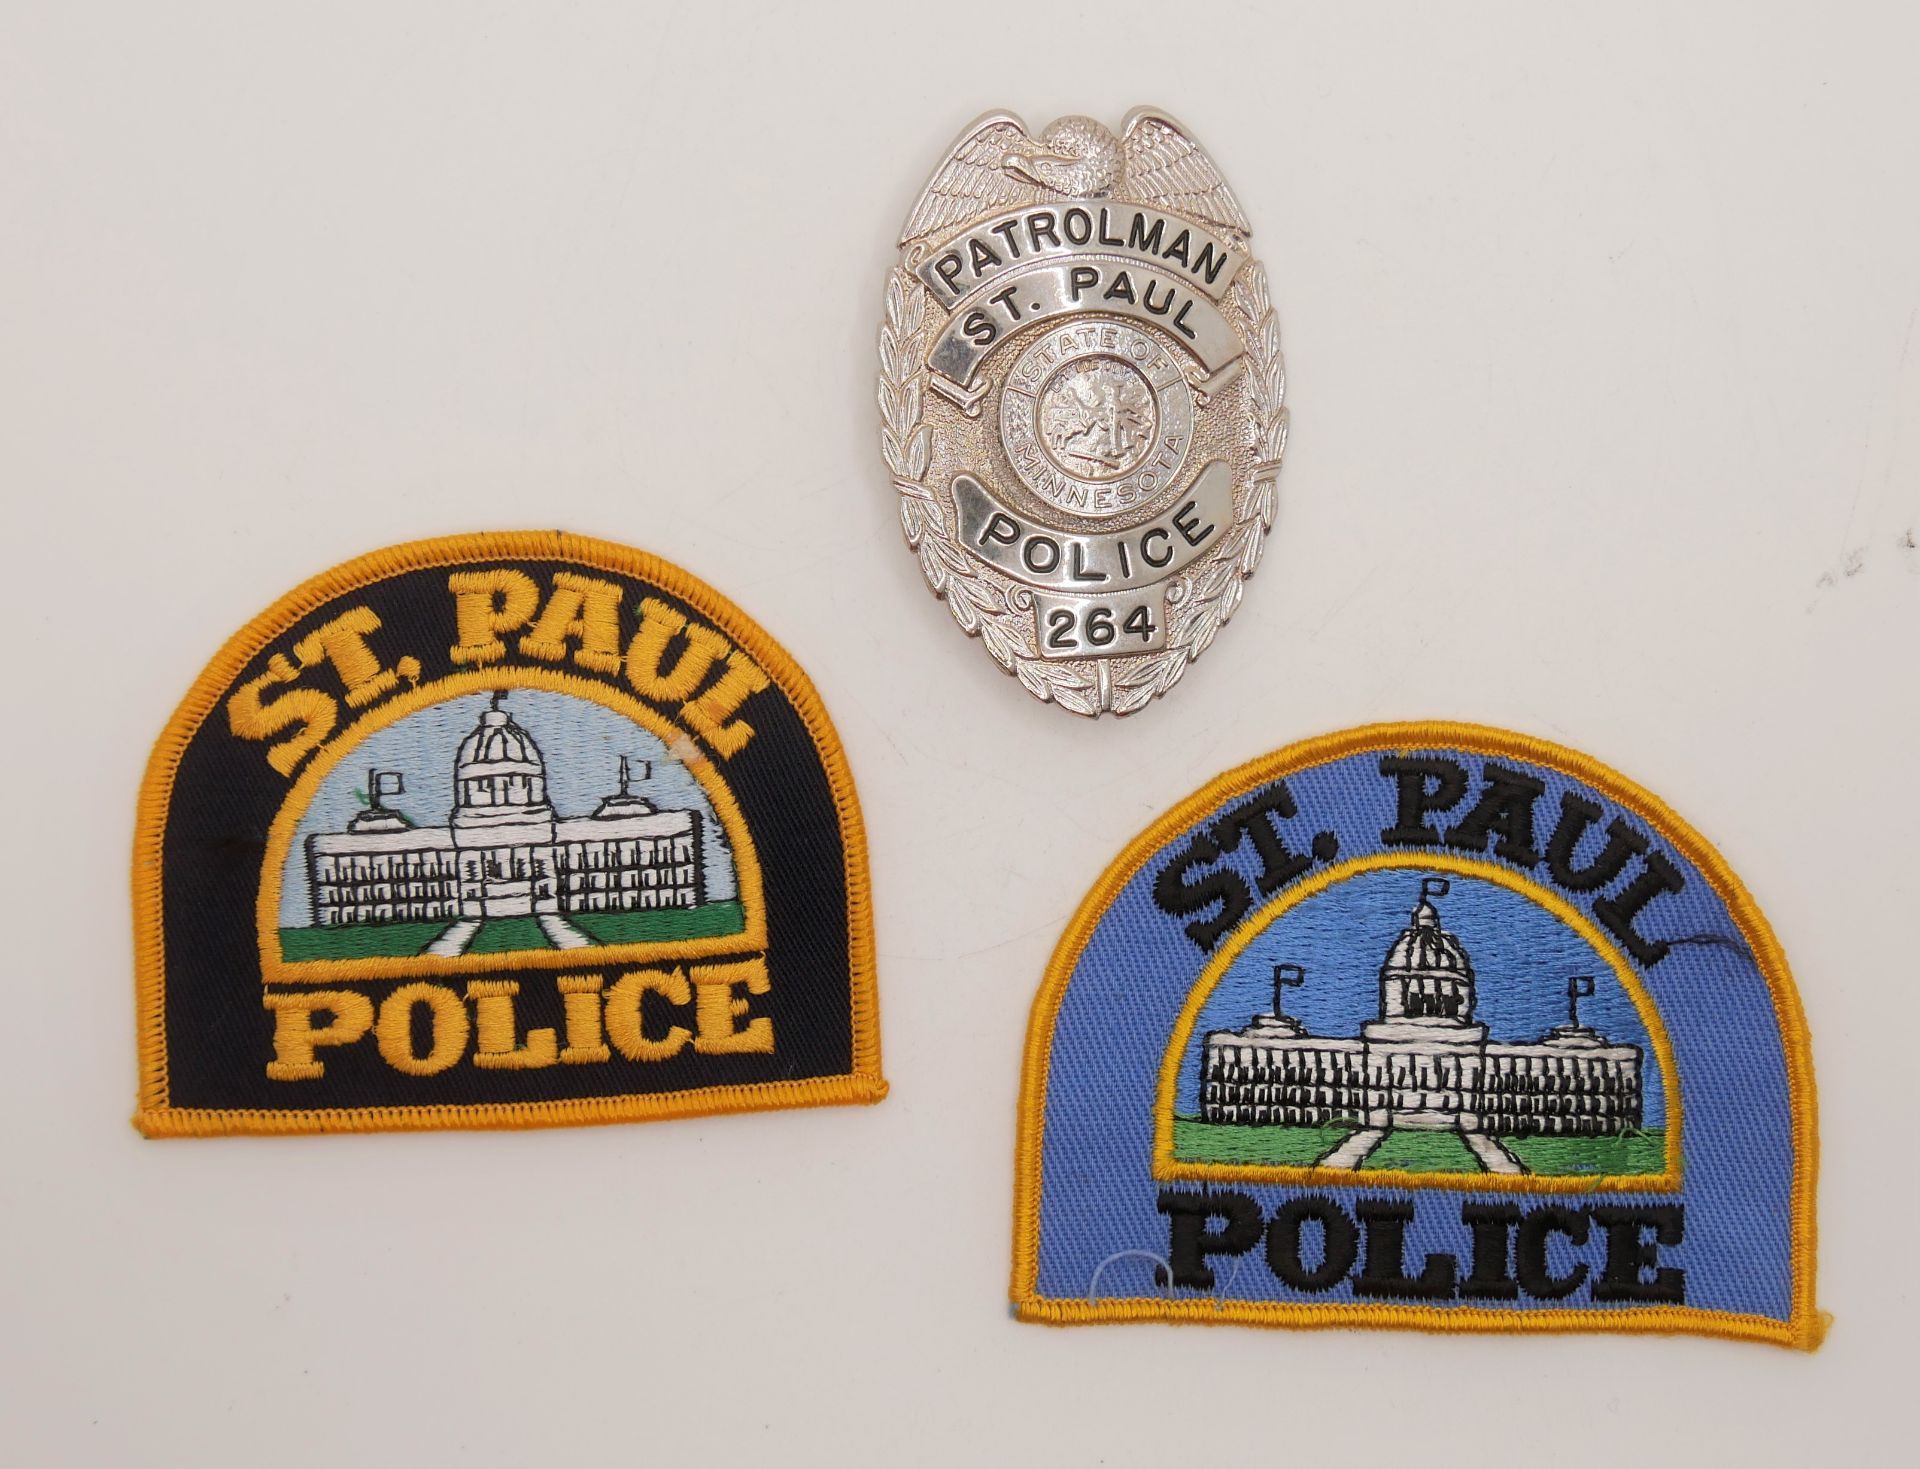 Aus Sammelauflösung! Lot Aufnäher / Patches sowie 1 Marke "St. Paul Police" insgesamt 3 Stück. Bitte